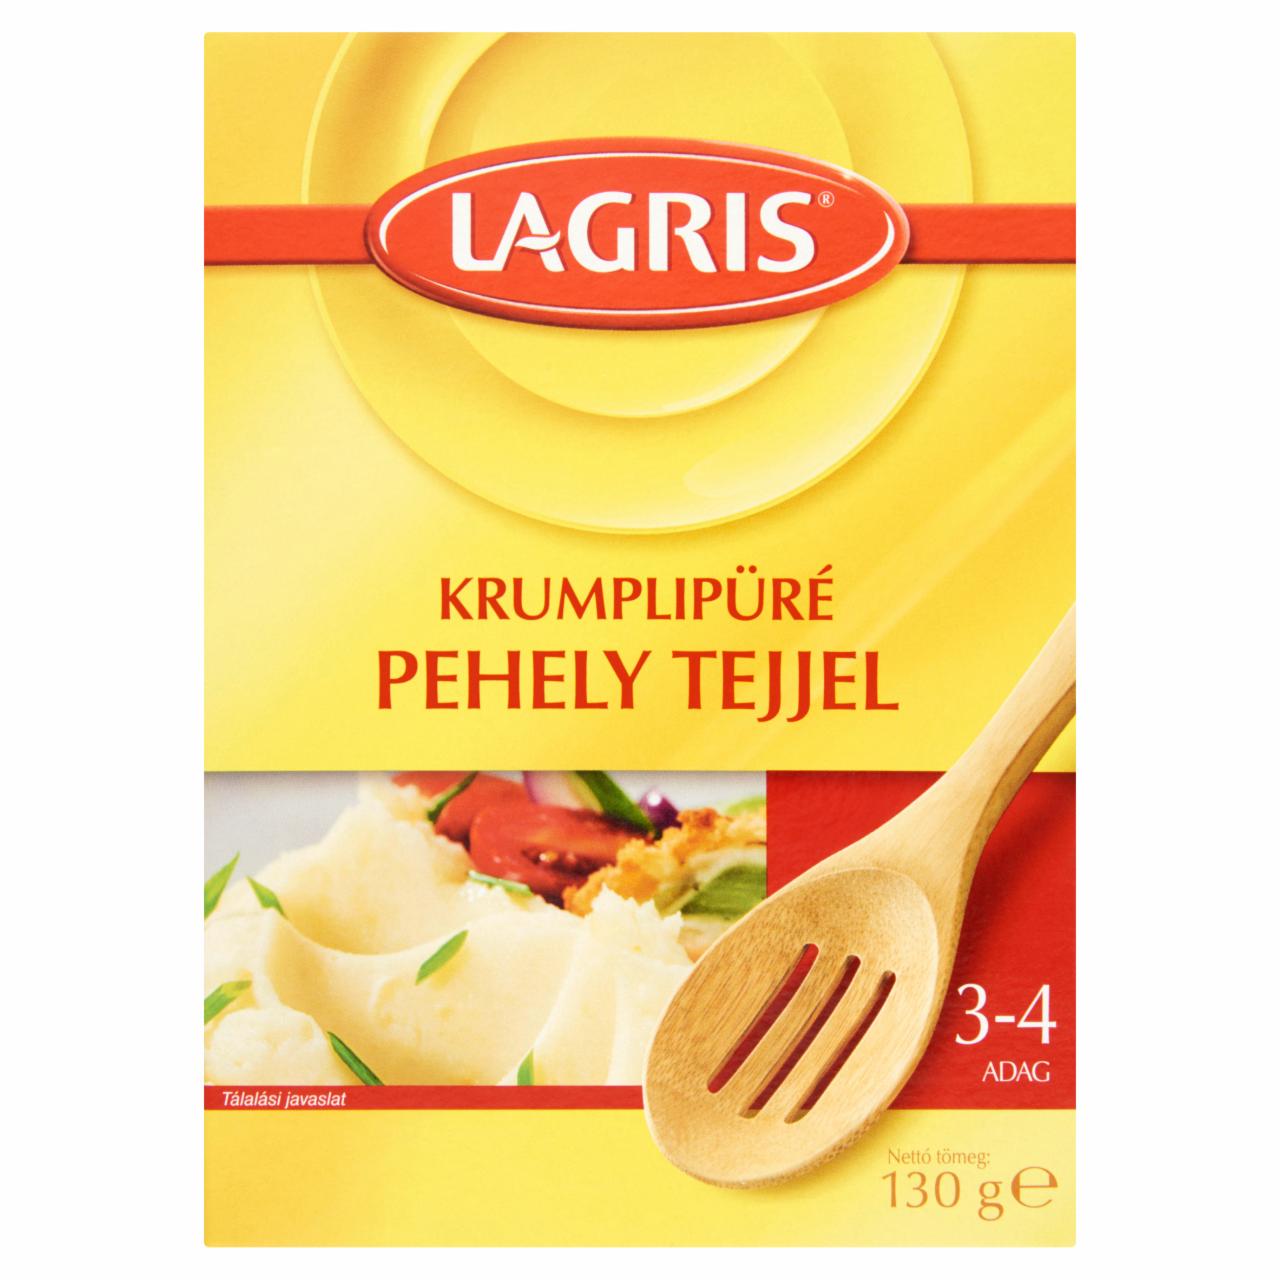 Képek - Lagris krumplipüré pehely tejjel 130 g